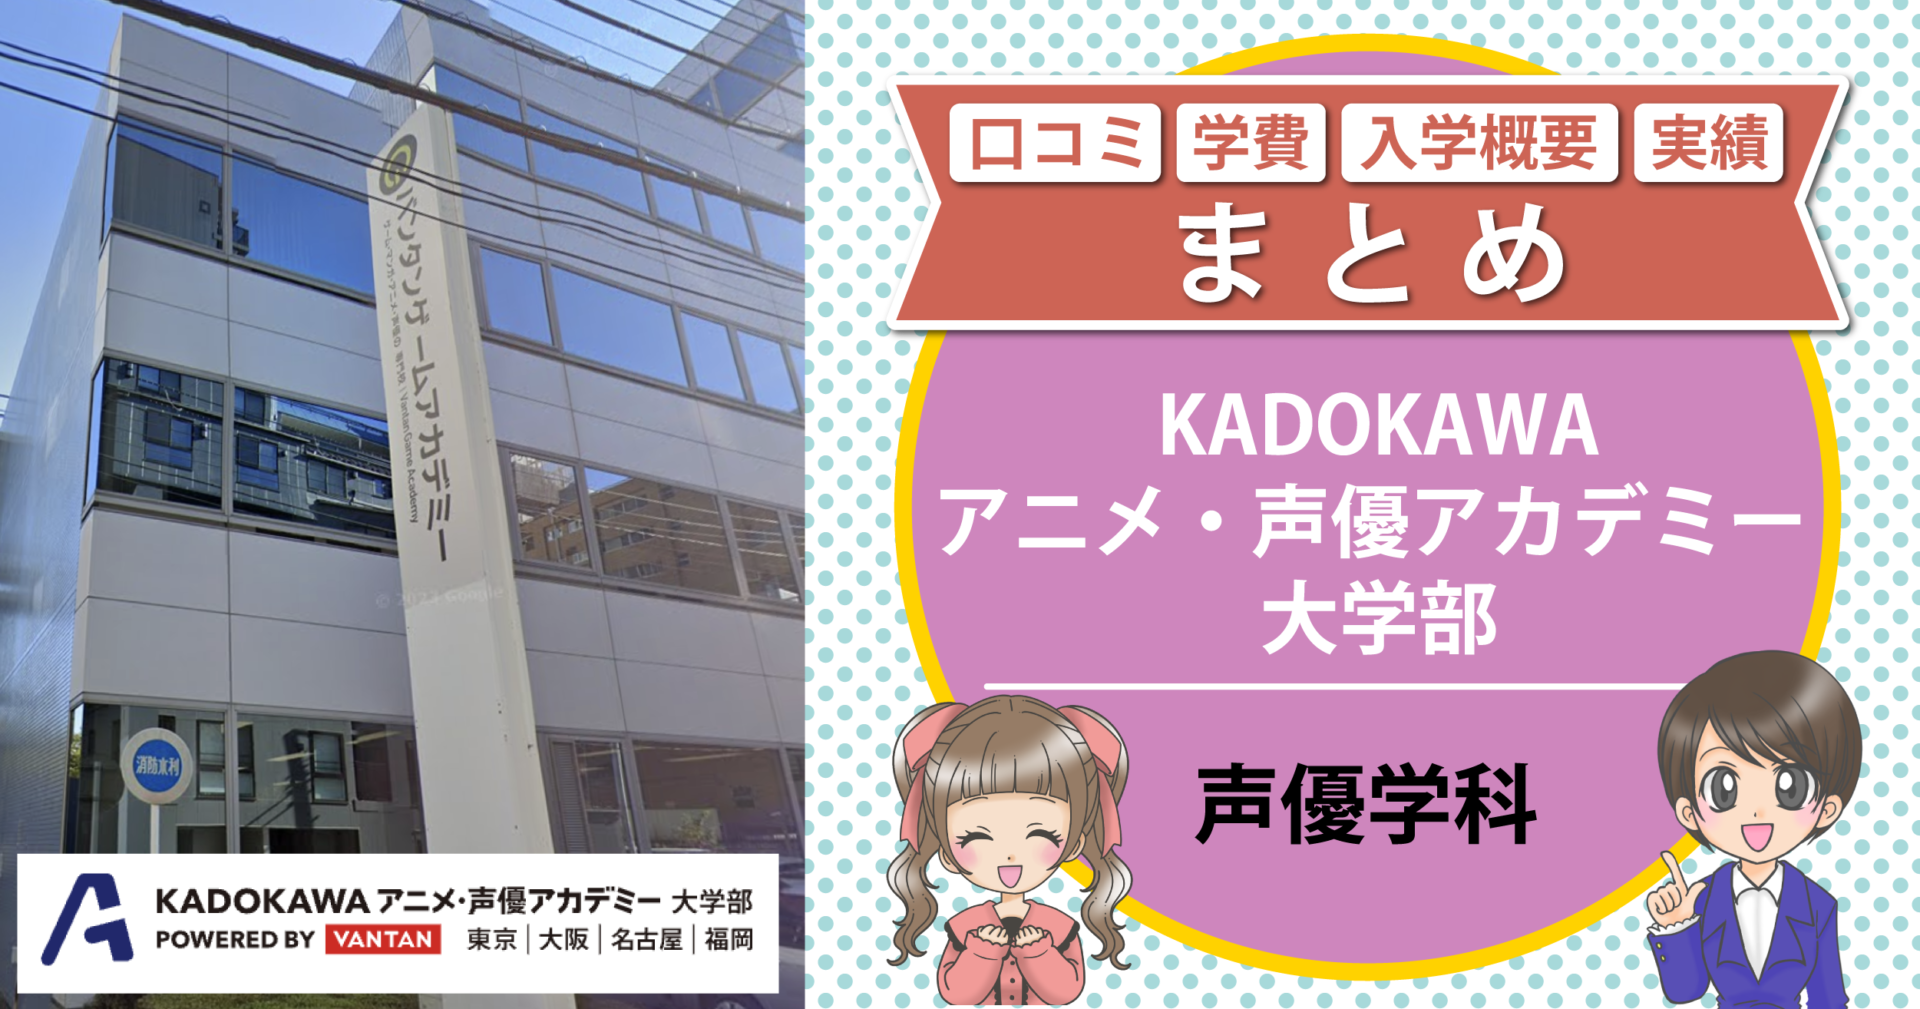 KADOKAWAアニメ・声優アカデミー大学部【声優学科】